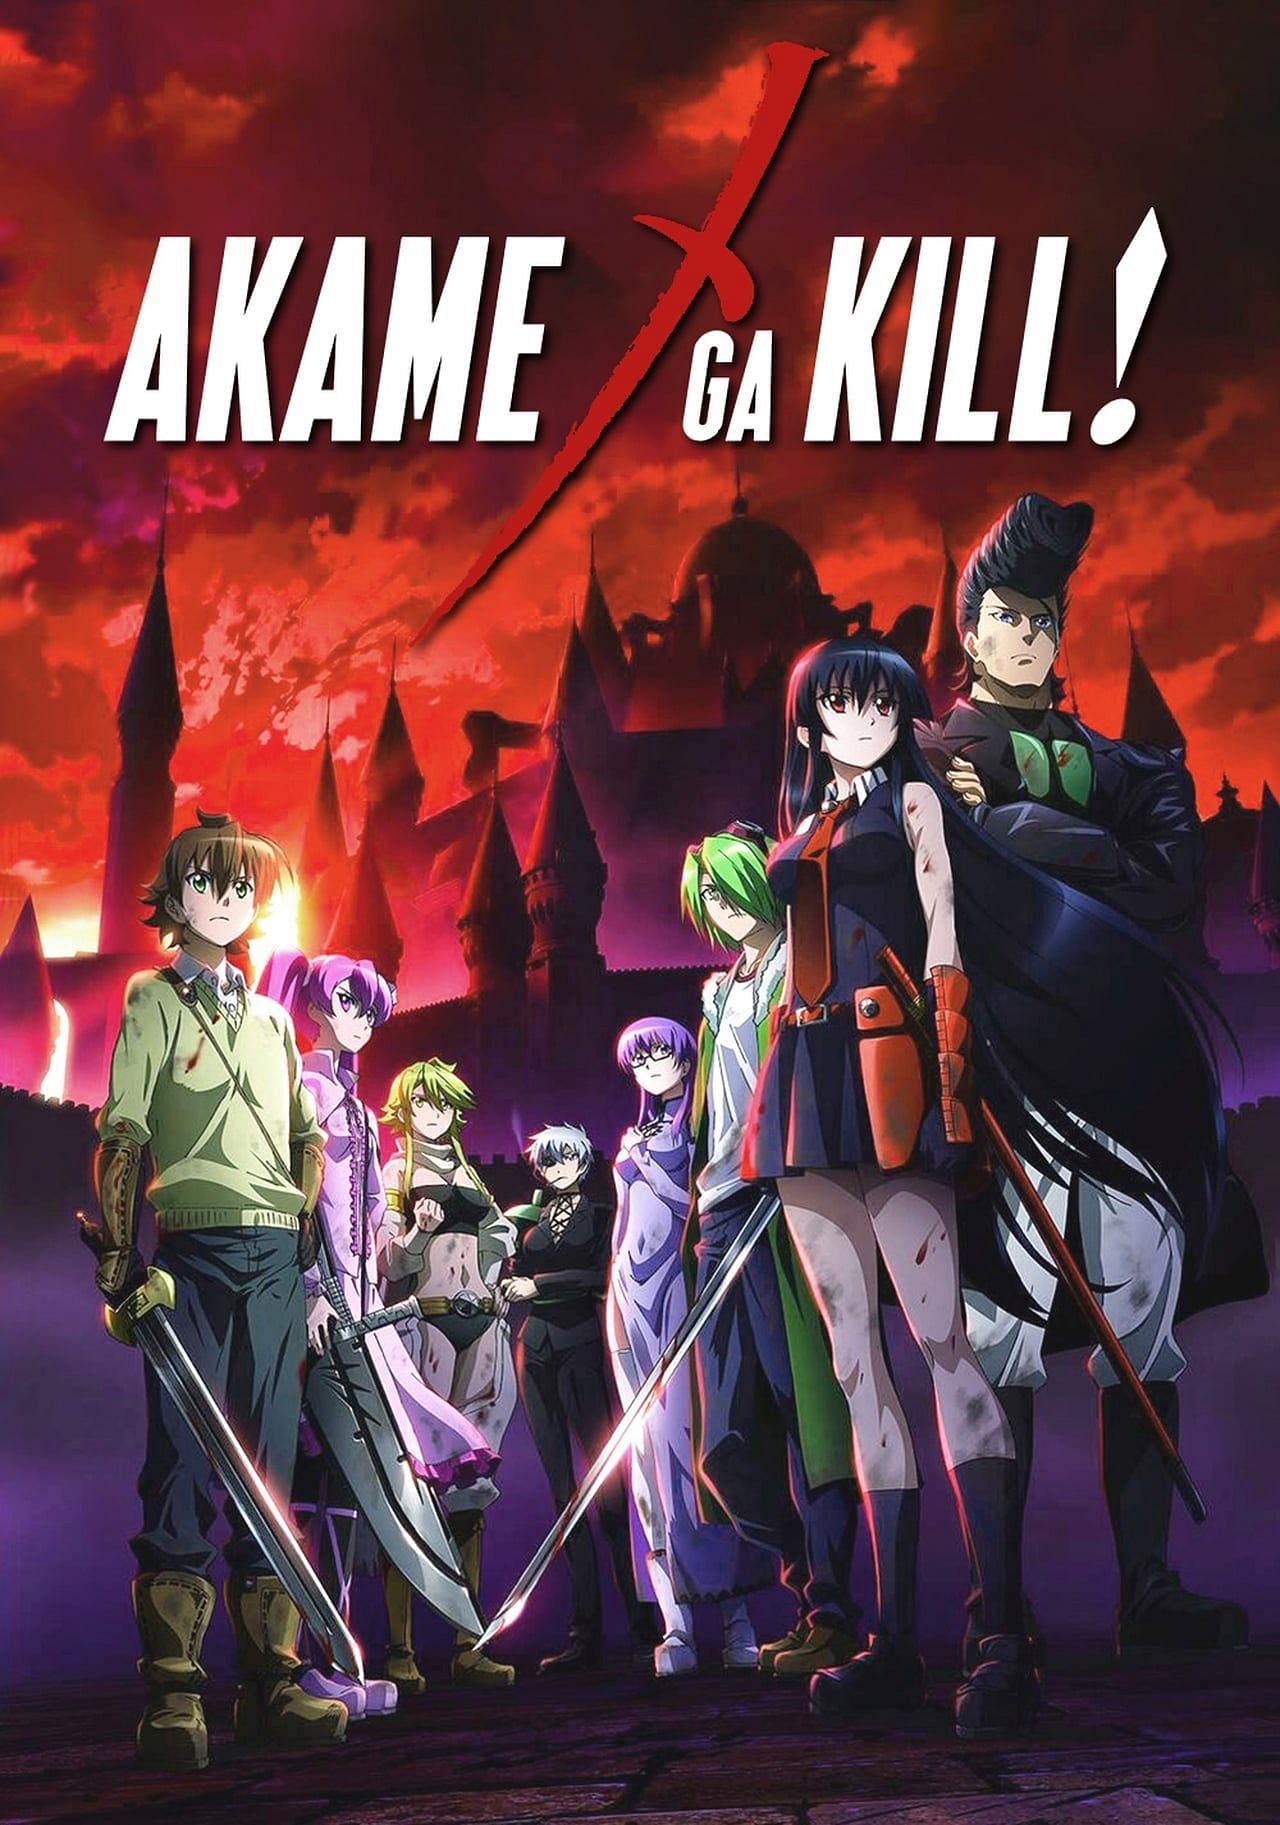 Akame Ga Kill! (Image via Studio White Fox) Eren in Atta